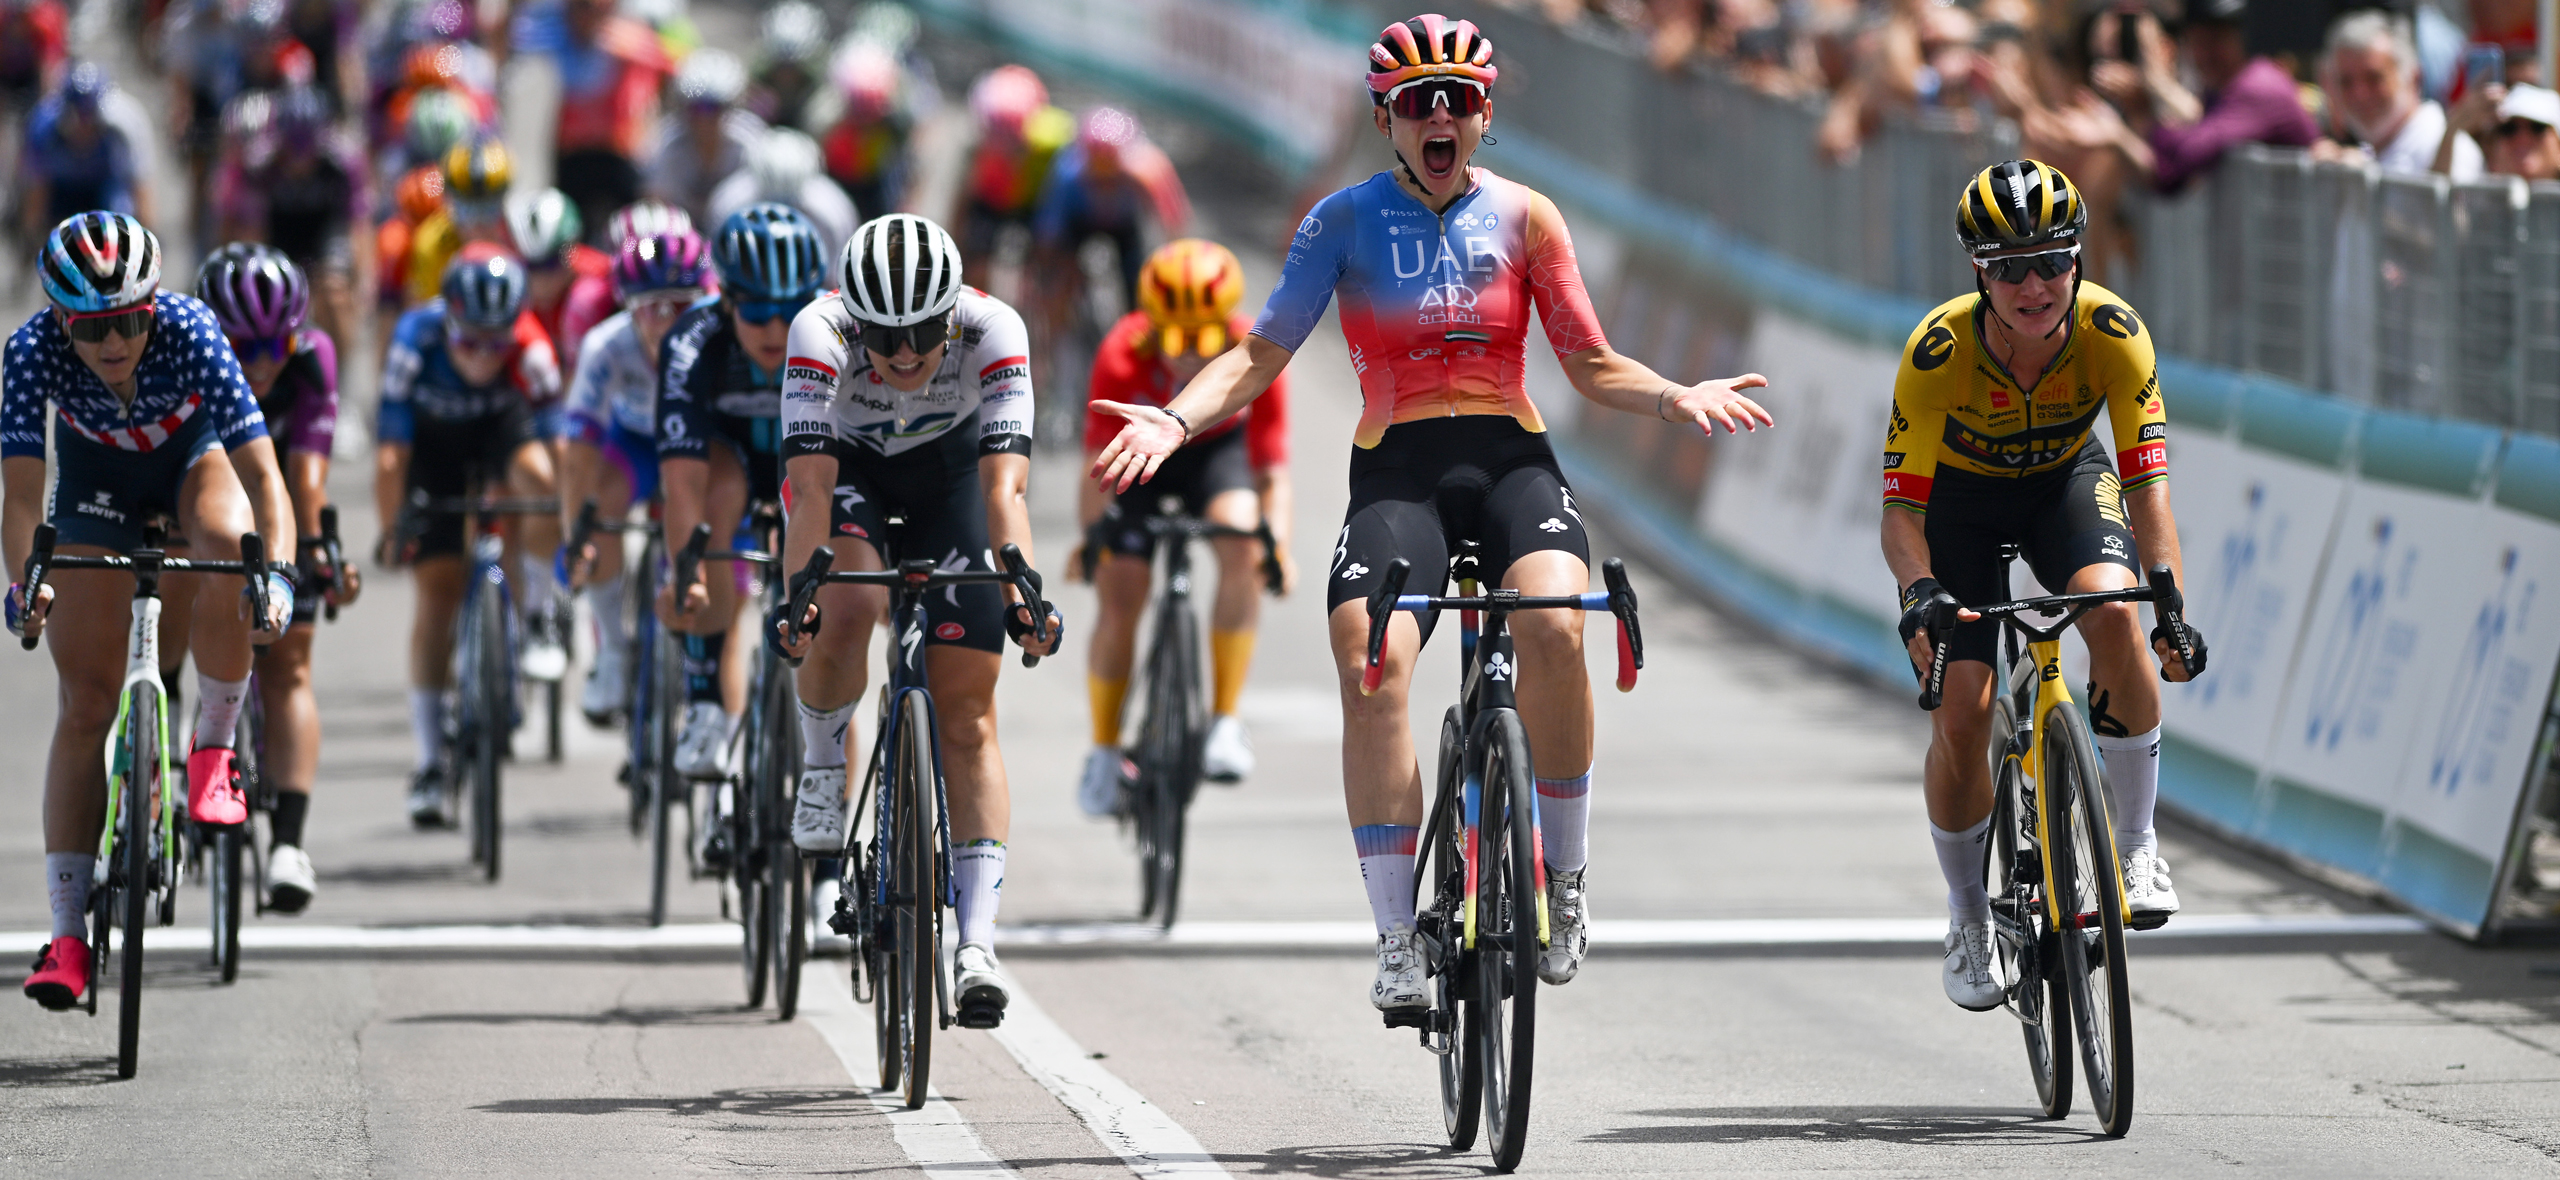 4 мая стартует вело­гонка «Джиро д’Италия»: распи­са­ние, участники, призовые